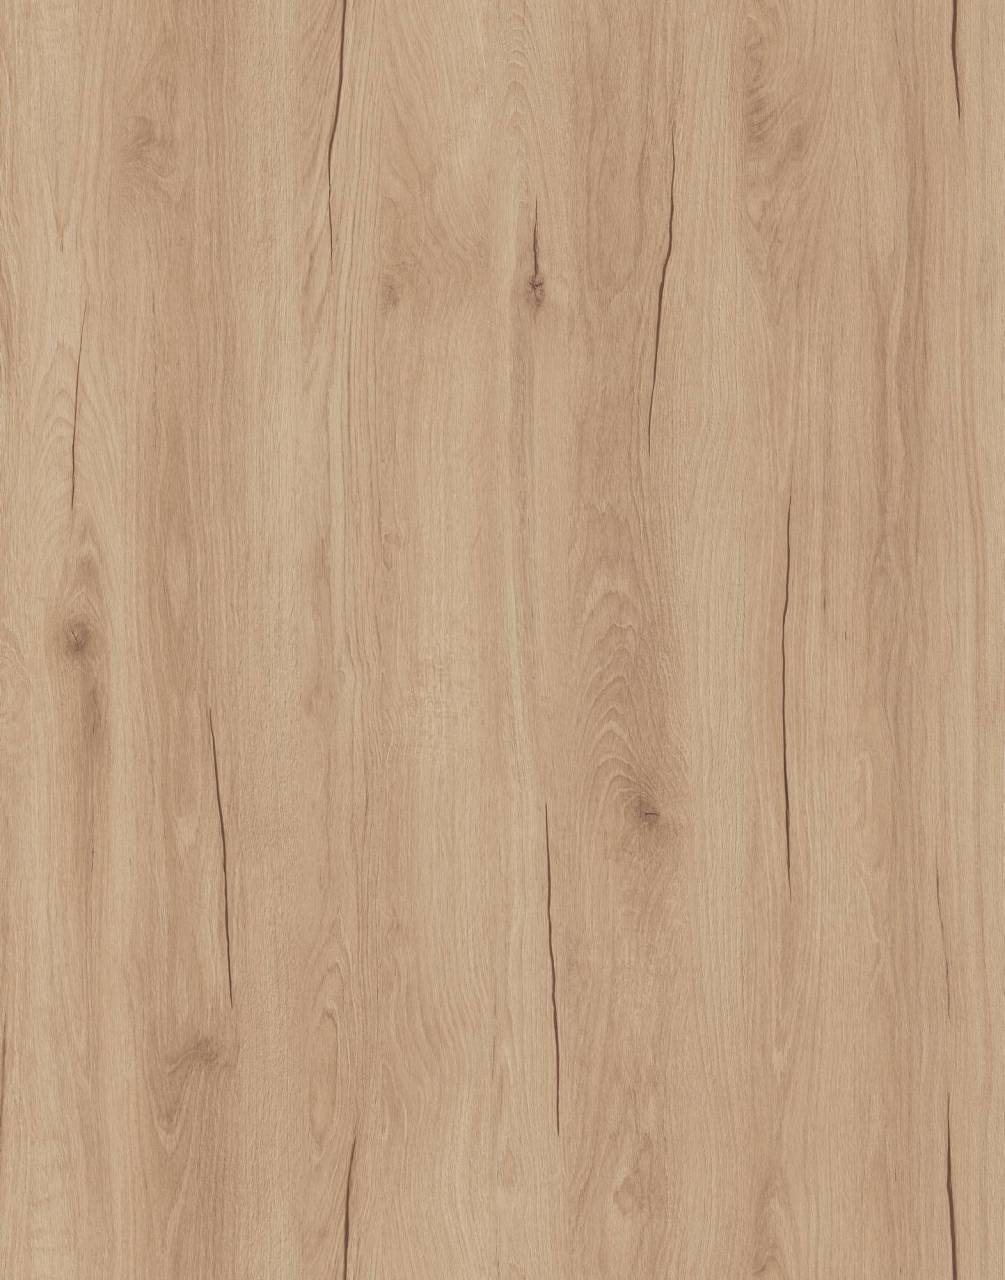 Close-up of K527 Biscotti Hudson Oak sample, featuring warm Biscotti Hudson Oak color.